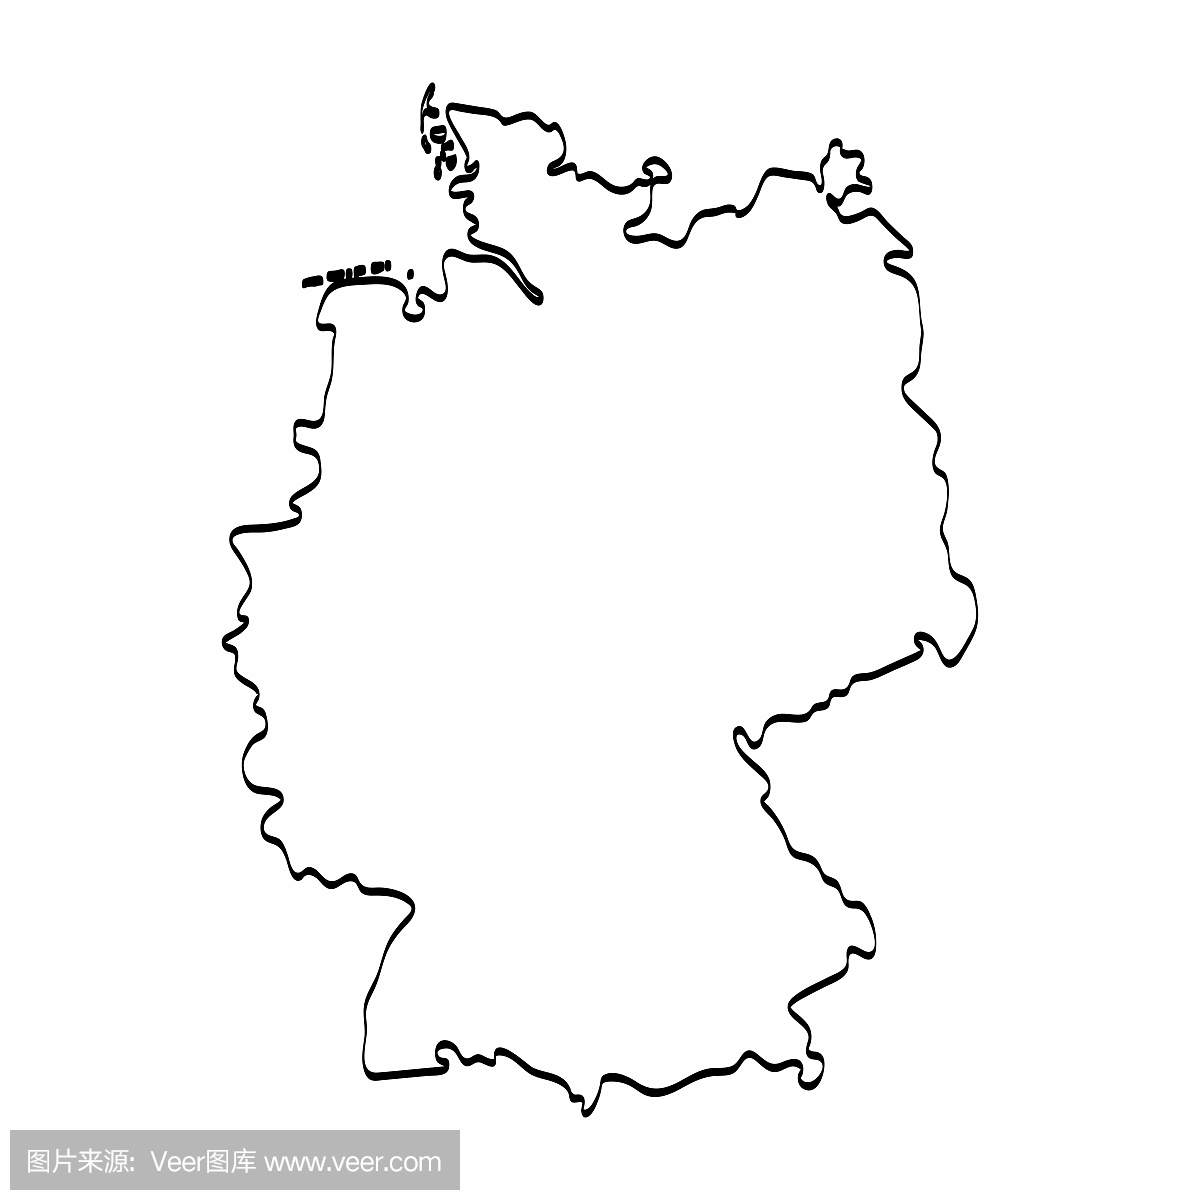 德国地图轮廓图形徒手画在白色背景上。矢量图